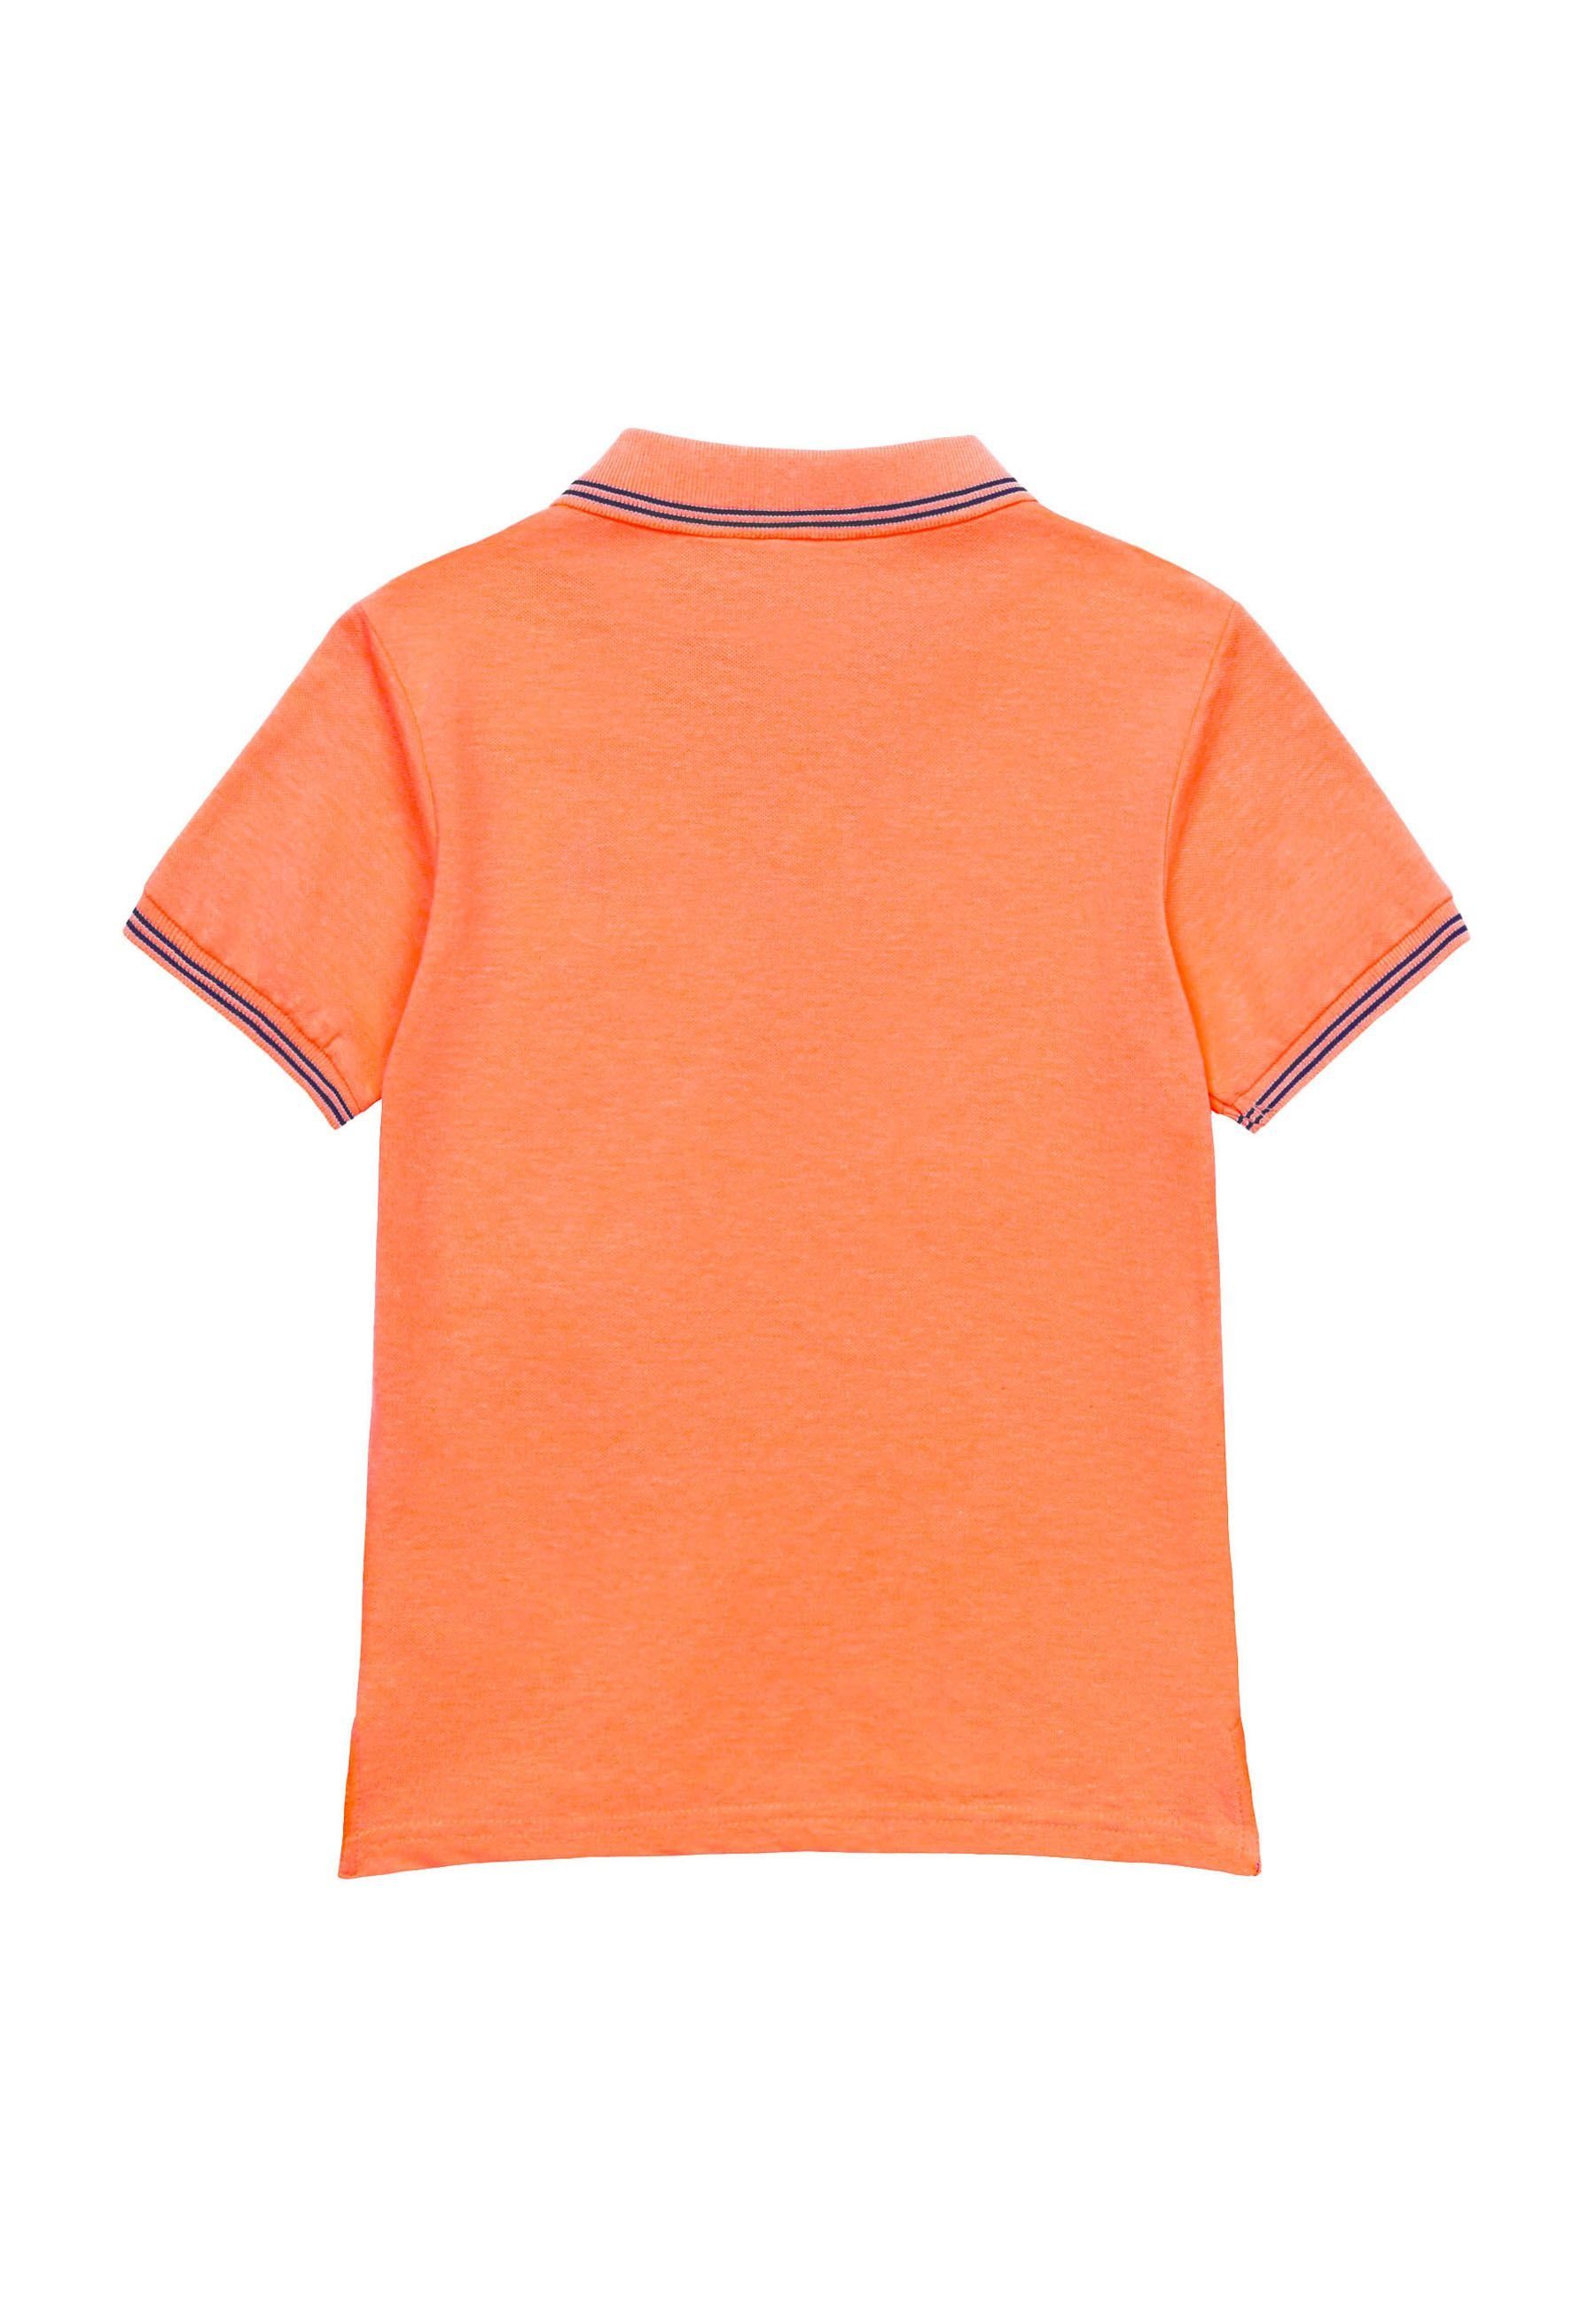 MINOTI Poloshirt Poloshirt mit Orange Kontrastelementen (1y-14y)